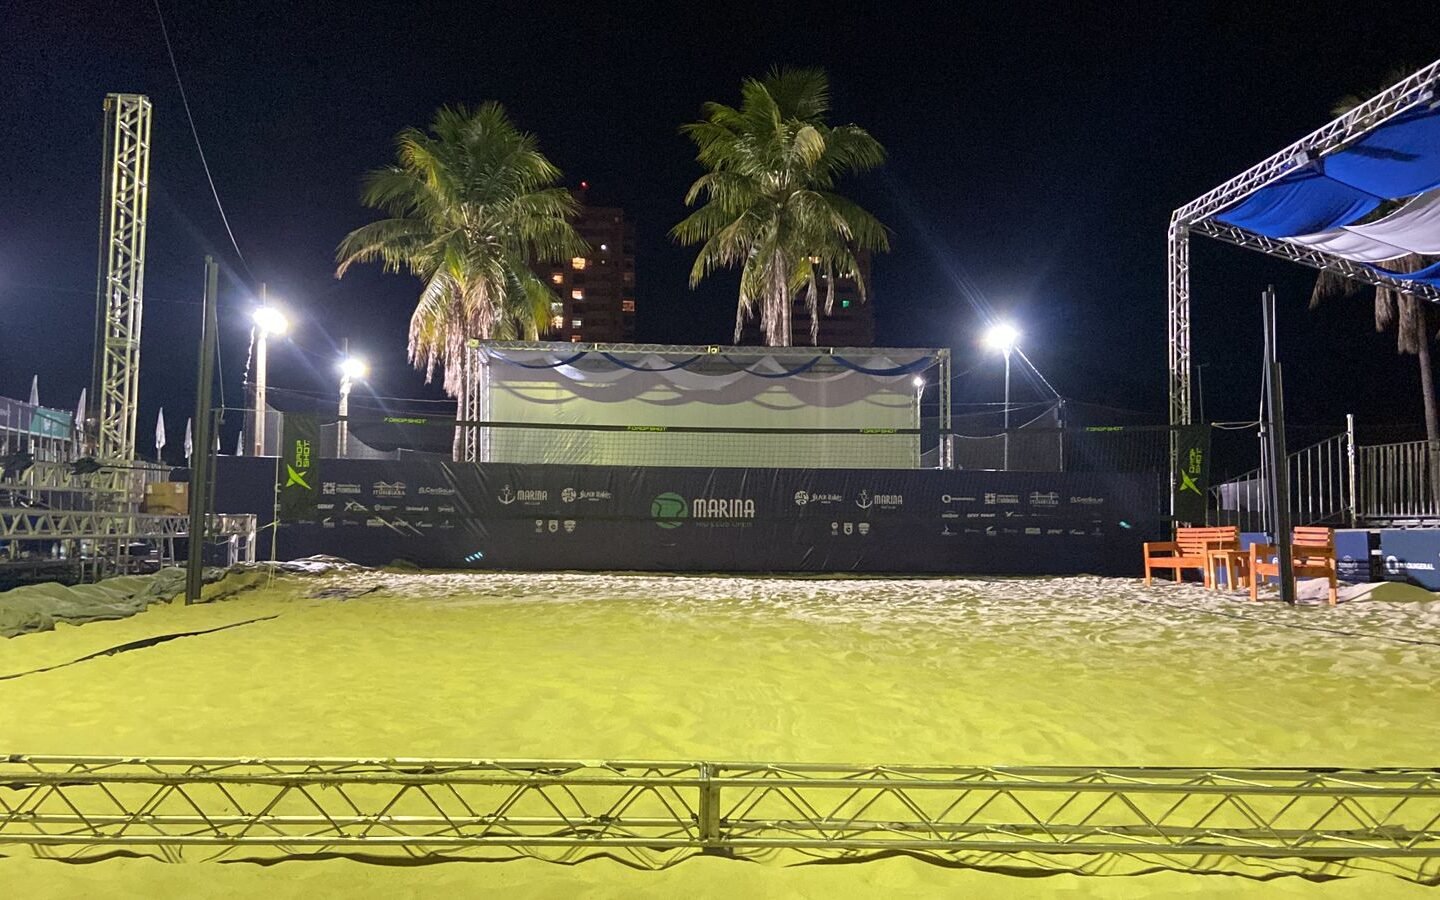 Marina Rio Club Open, el 1er evento internacional de tenis de playa en Goiás, comienza este martes en Itumbiara (GO)